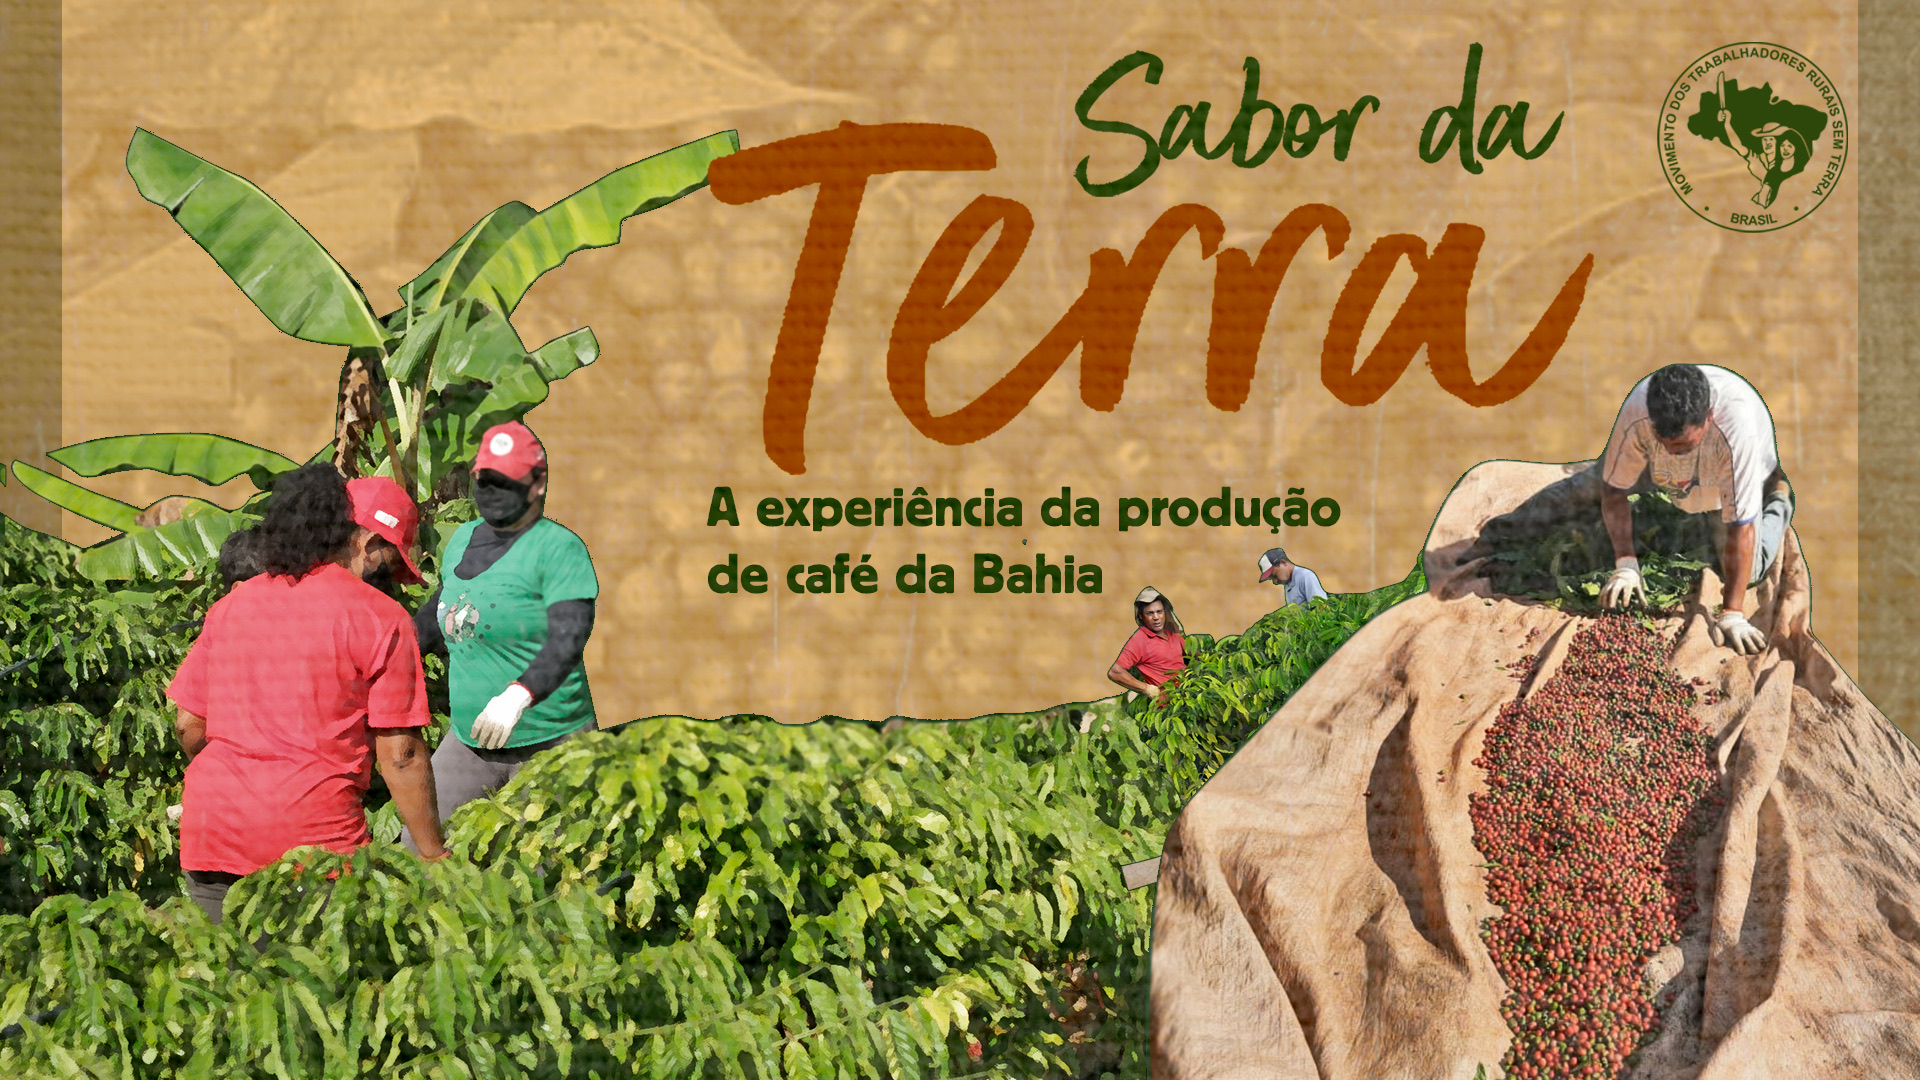 Sabor da Terra: A experiência da produção de café da Bahia